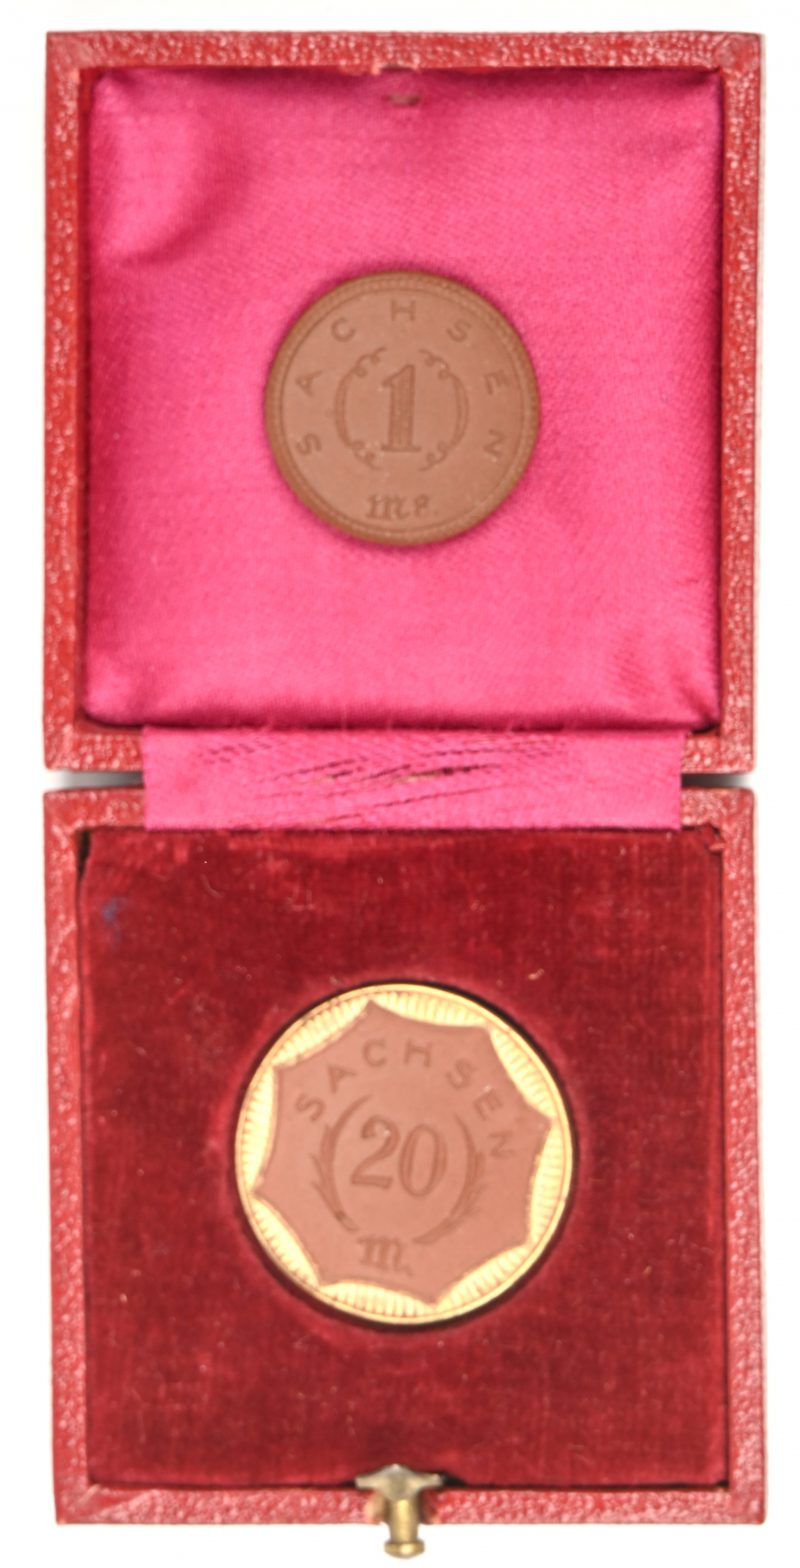 Een lotje van twee Sachsen munten in rood porselein, 1 Mark en 20 Mark, de laatste met vergulde rand. In foedraal.